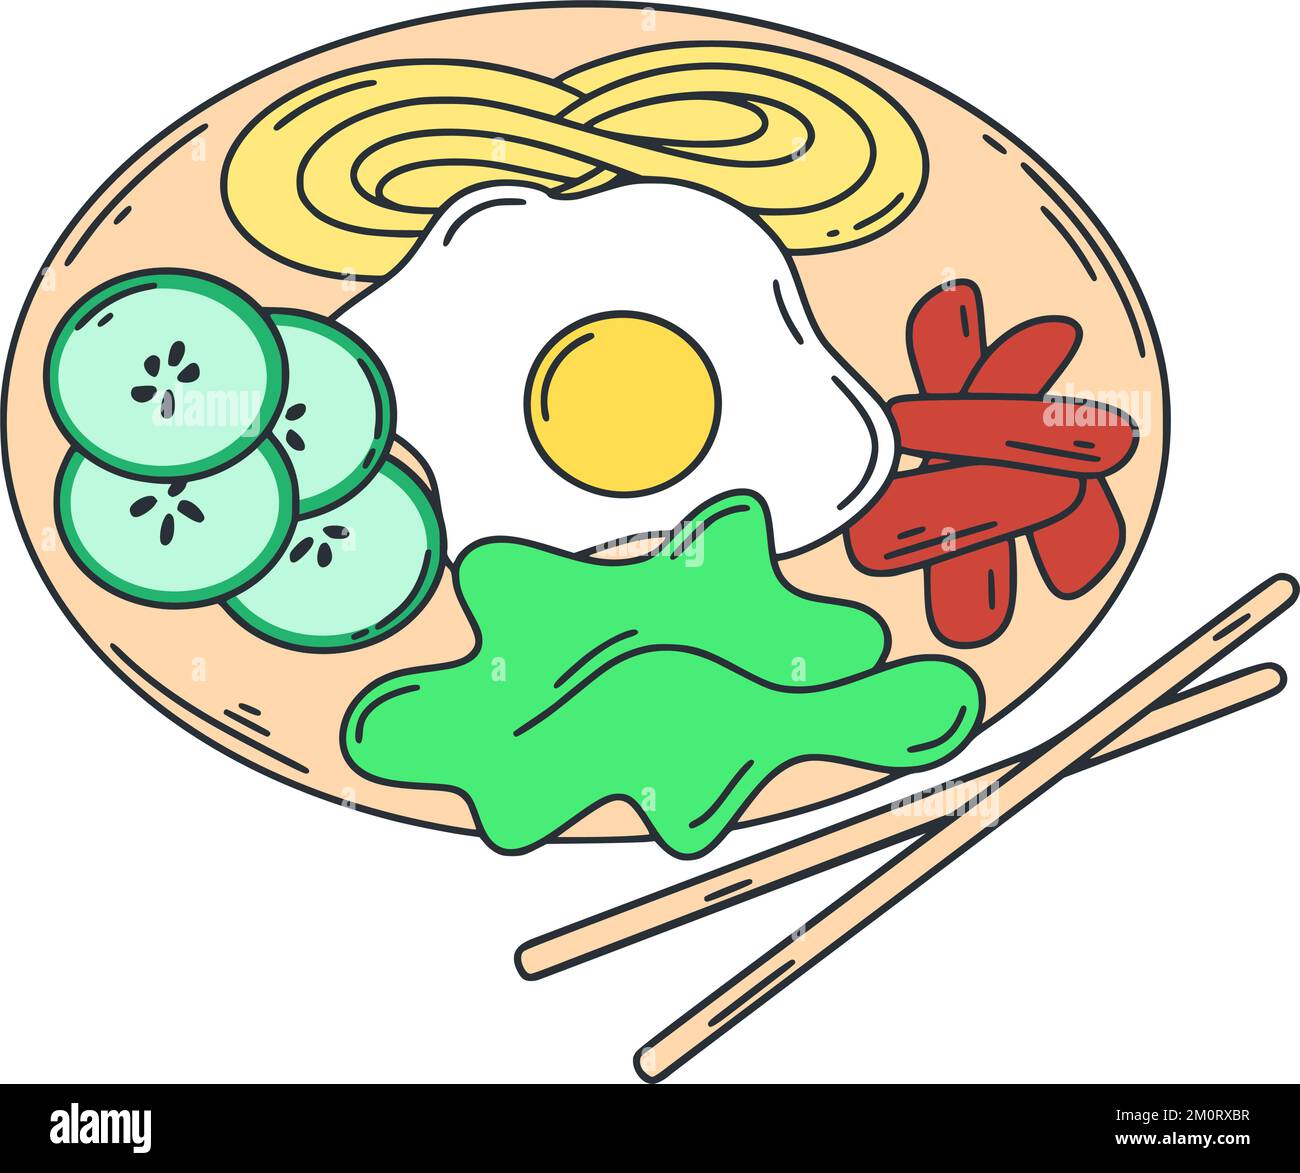 Tradizionale piatto coreano bibimbap. Illustrazione di vettore isolato di cibo asiatico. Piatto a porzioni di verdure, carne e uova. Pranzo al ristorante o al bar Illustrazione Vettoriale